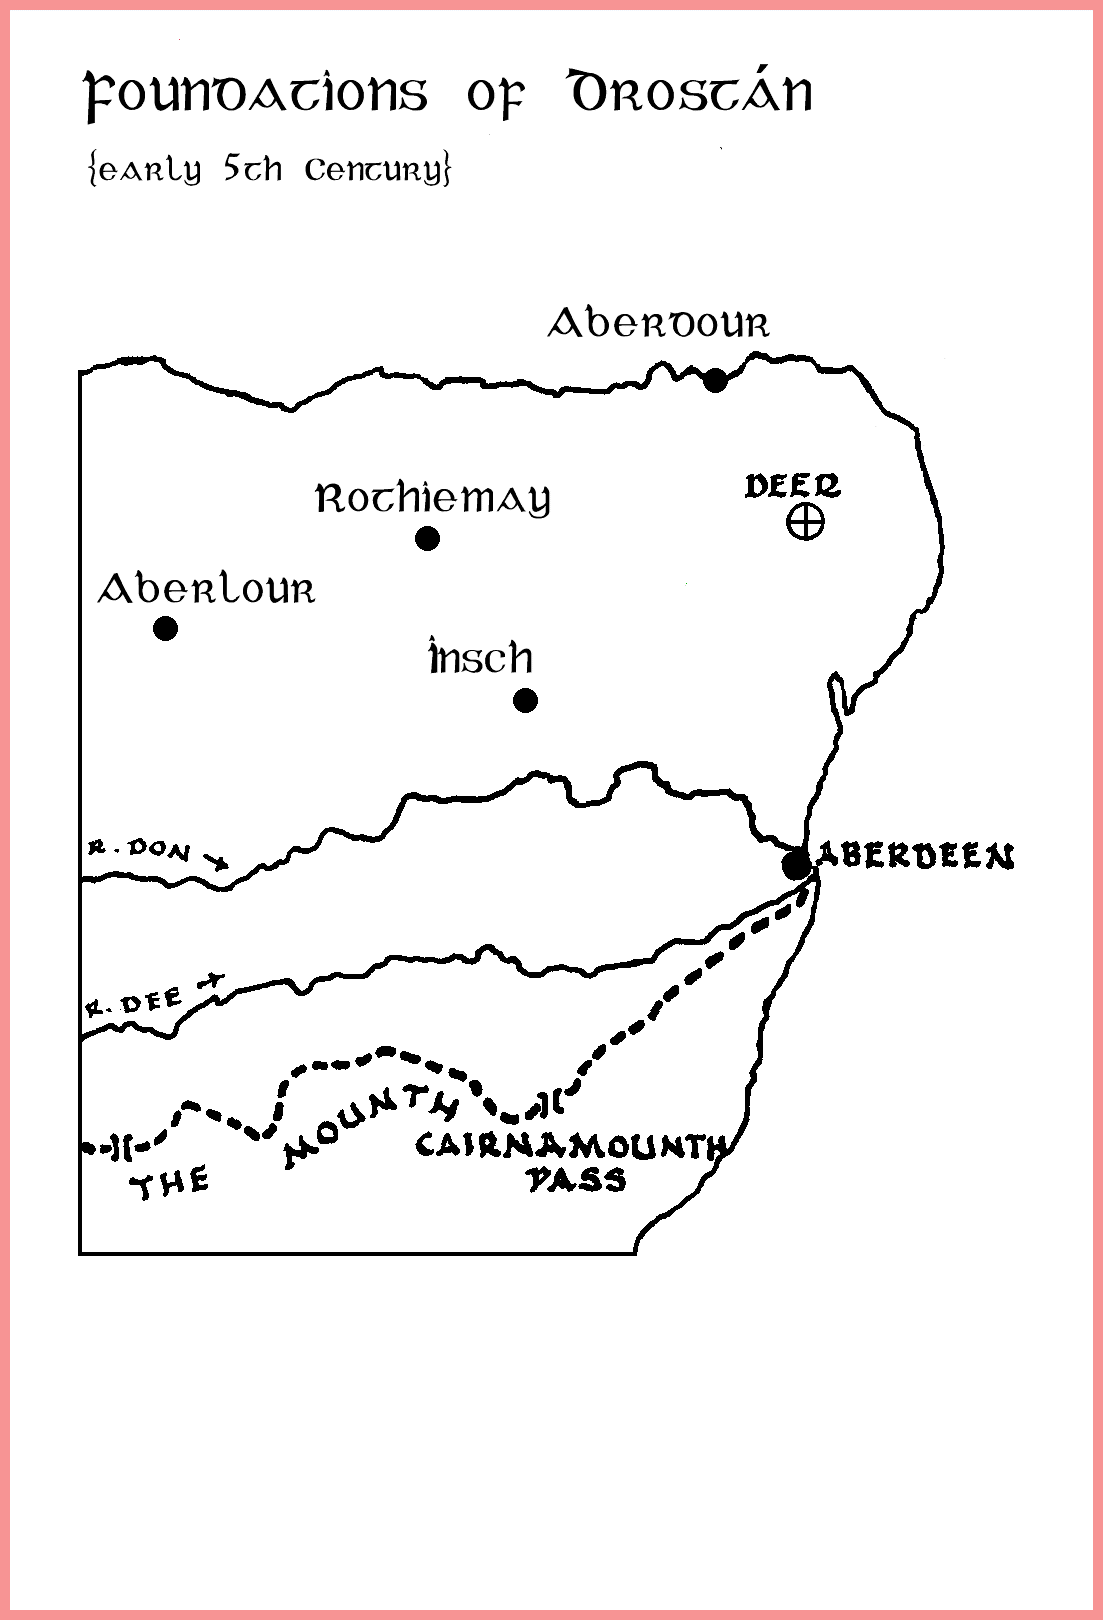 Map of Drostán's Churches